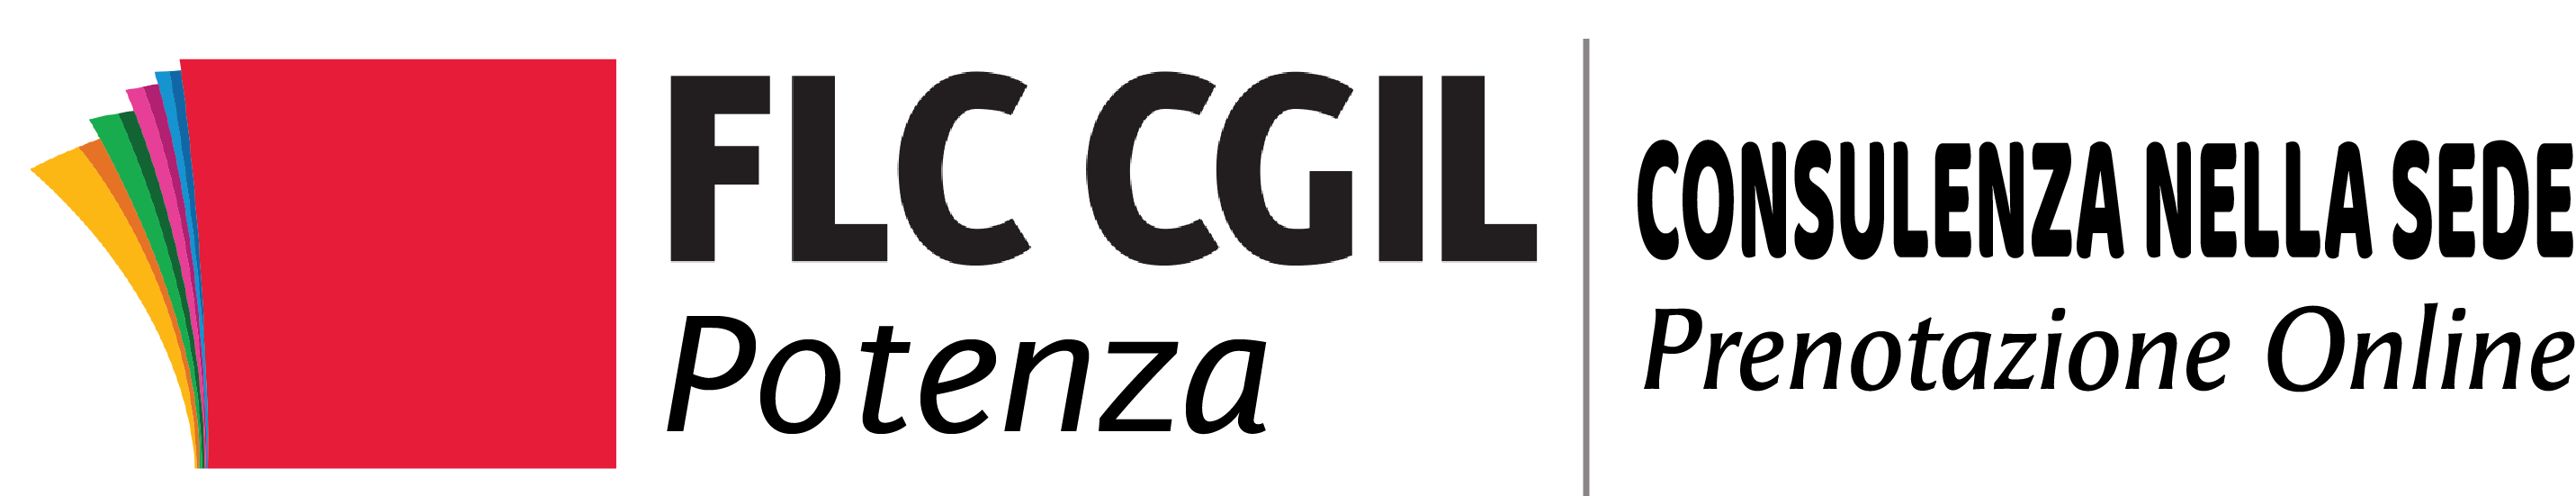 FLC CGIL Potenza – Servizio di Prenotazione Online